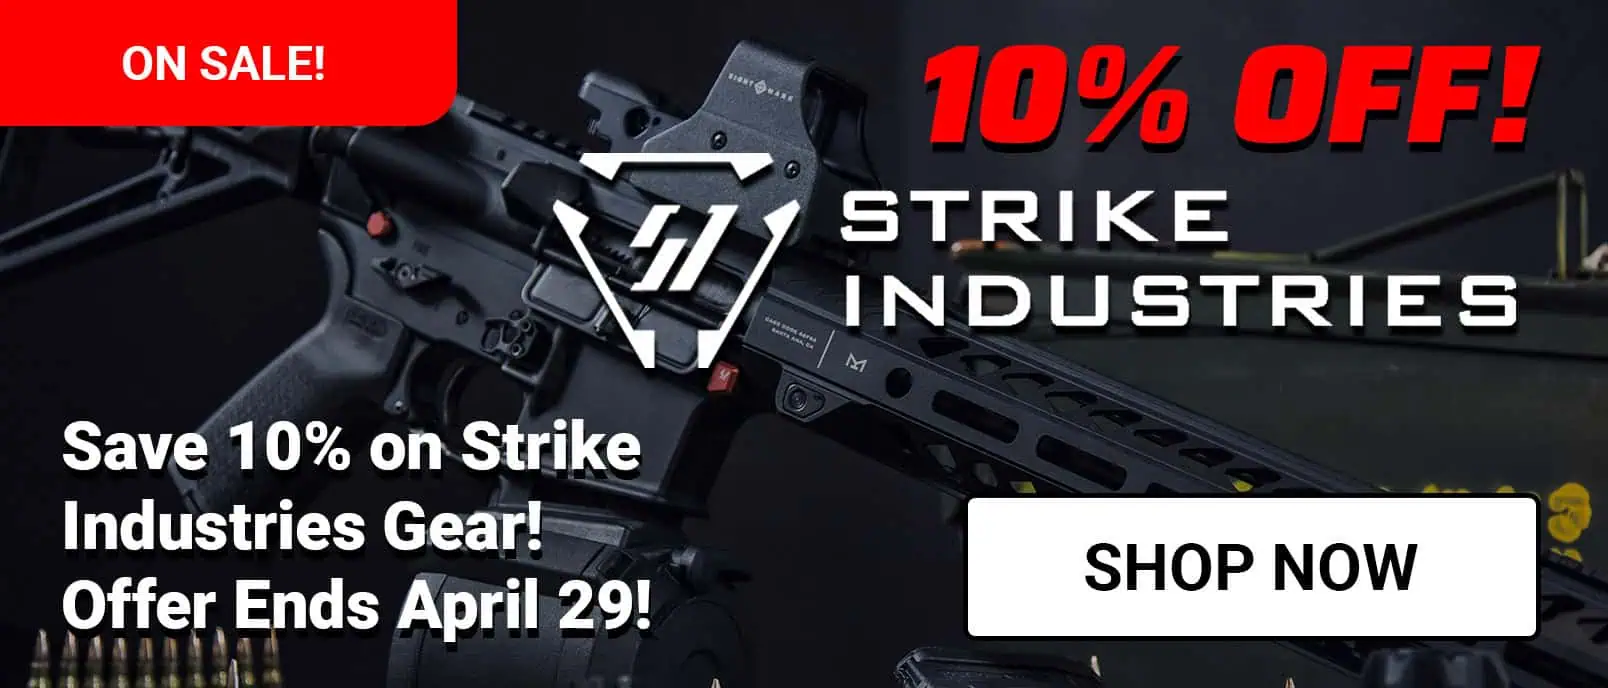 Save 10% on Strike Industries!